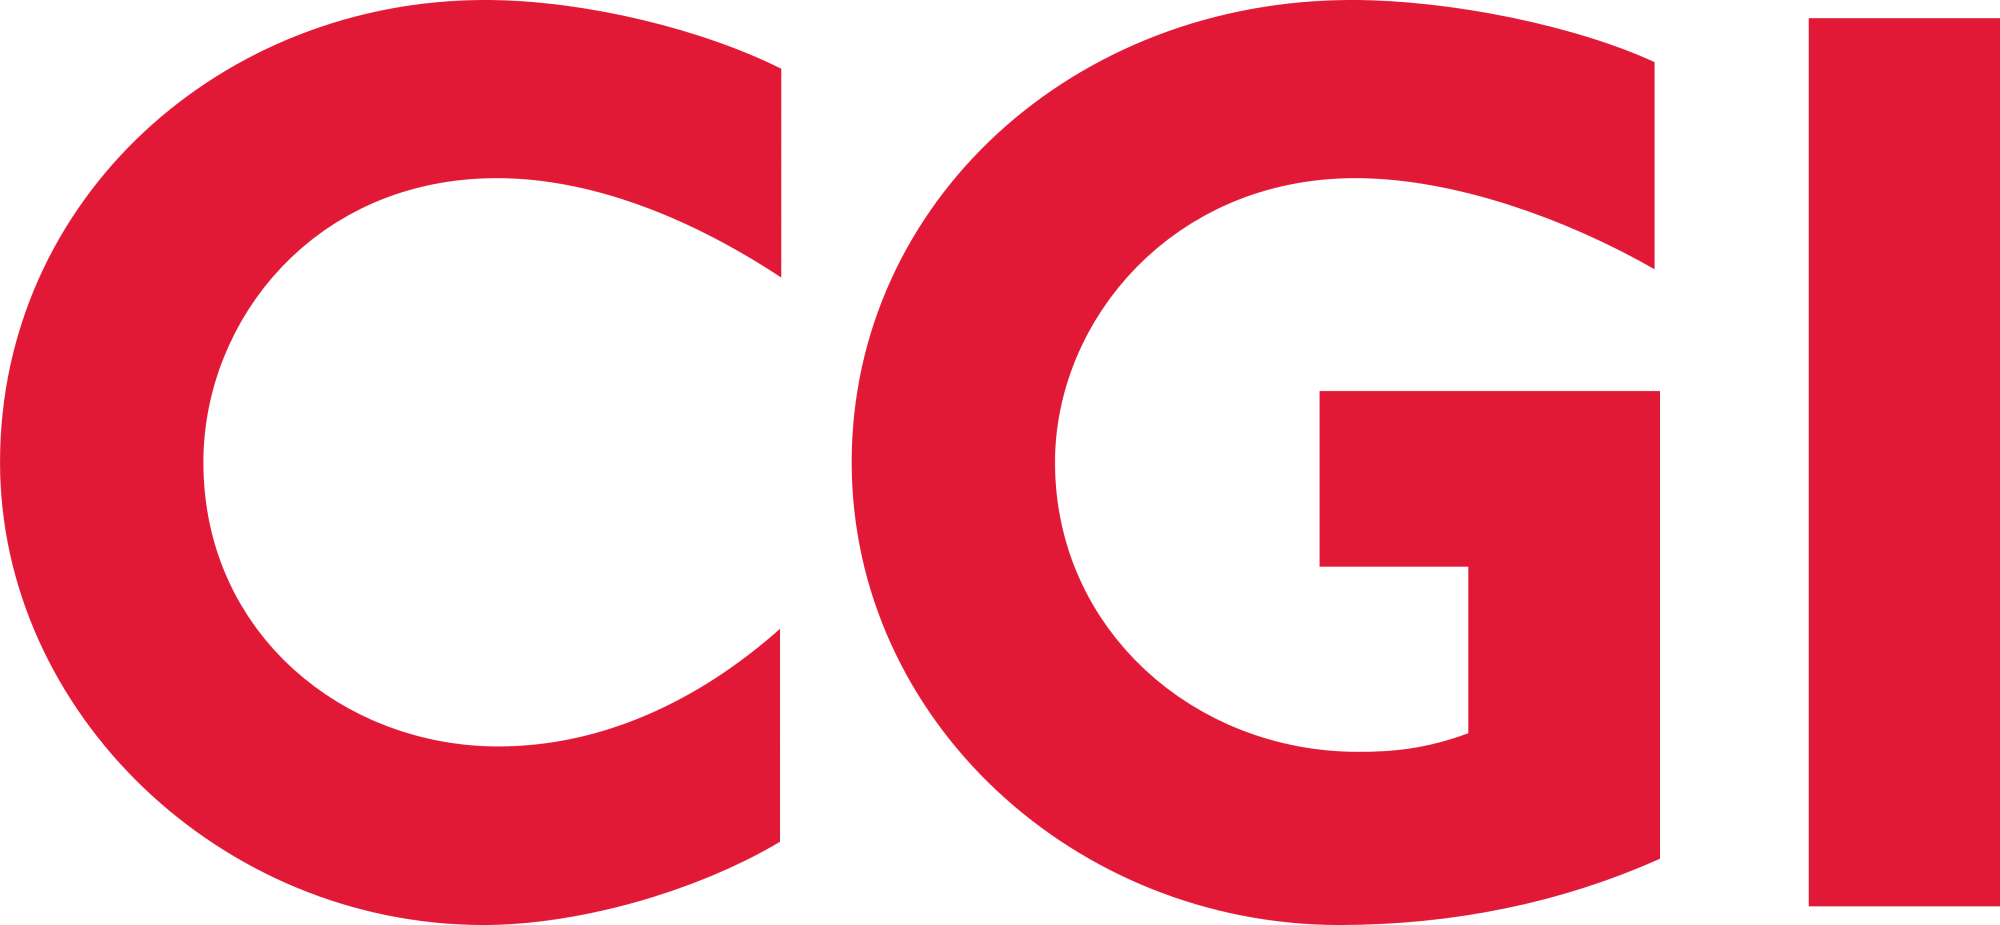 CGI_logo.png